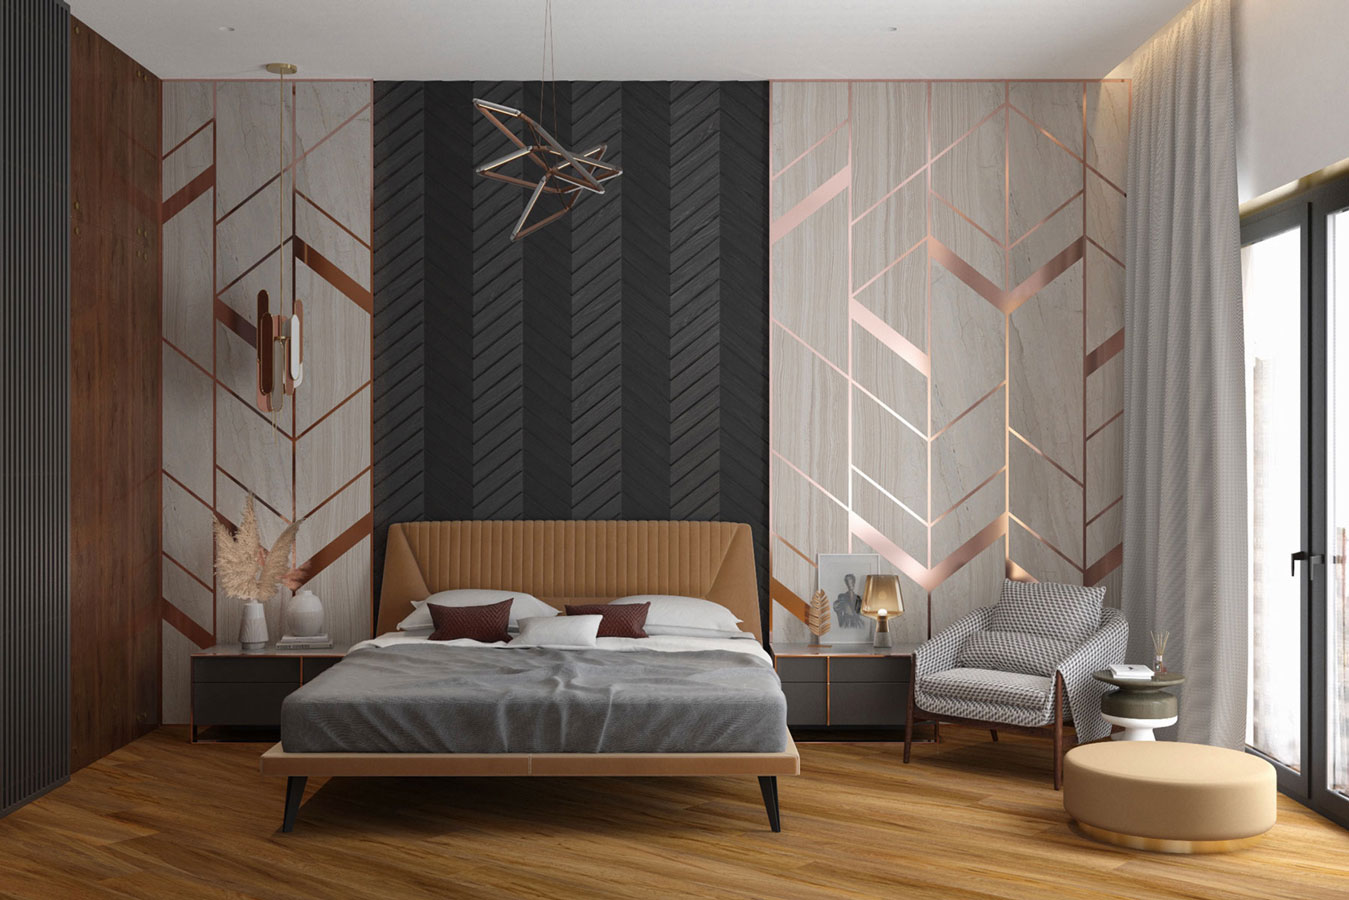 Une chambre féminine avec un papier peint effet cuivrée/or rose, il y a un parquet en bois et un lit confortable.